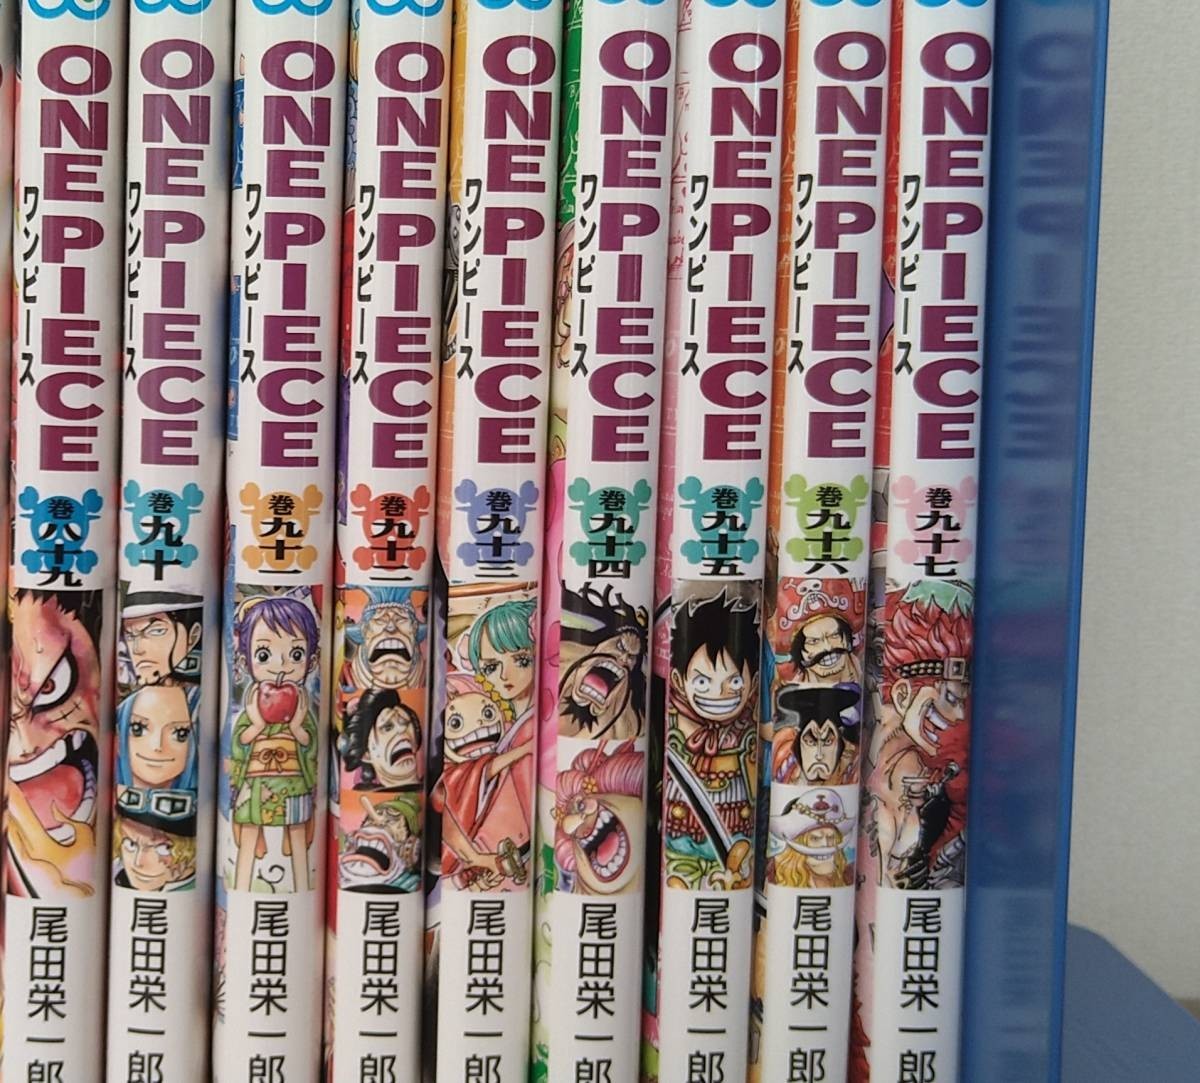 お気にいる One Piece ワンピース 漫画1 97巻までの全巻セット 全巻セット